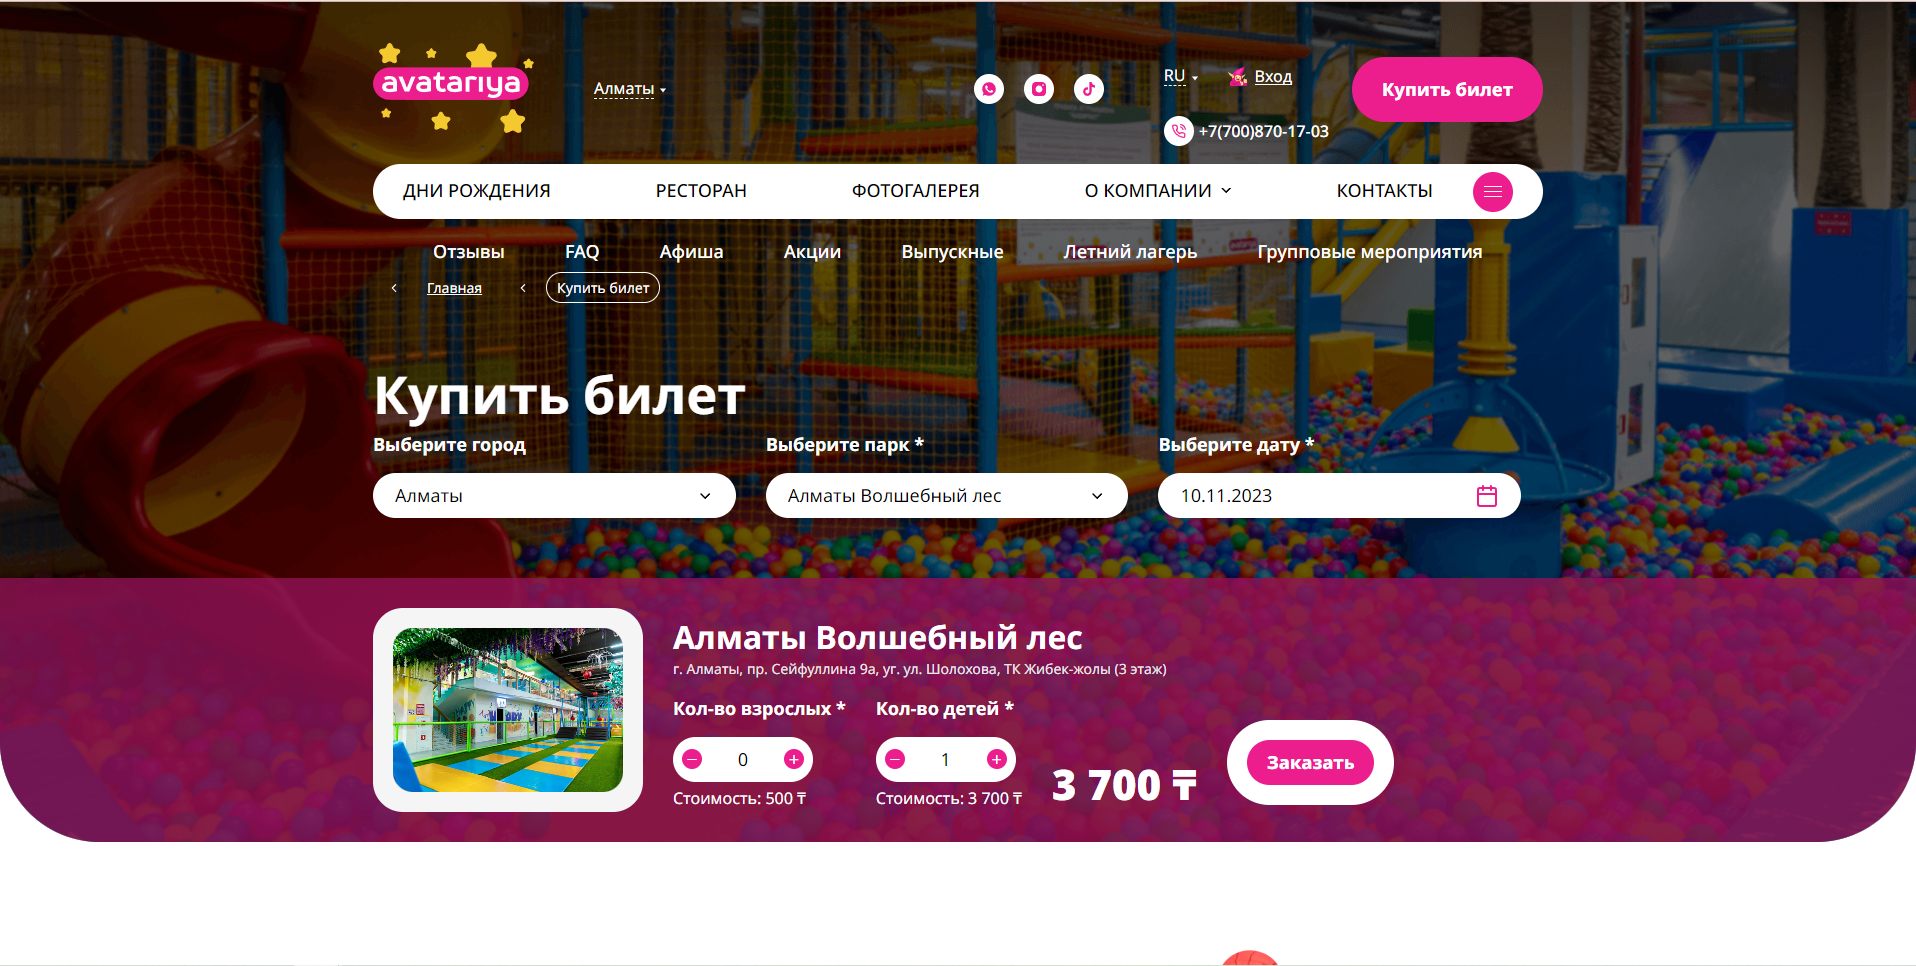 индивидуальный корпоративный сайт сети парков avatariya